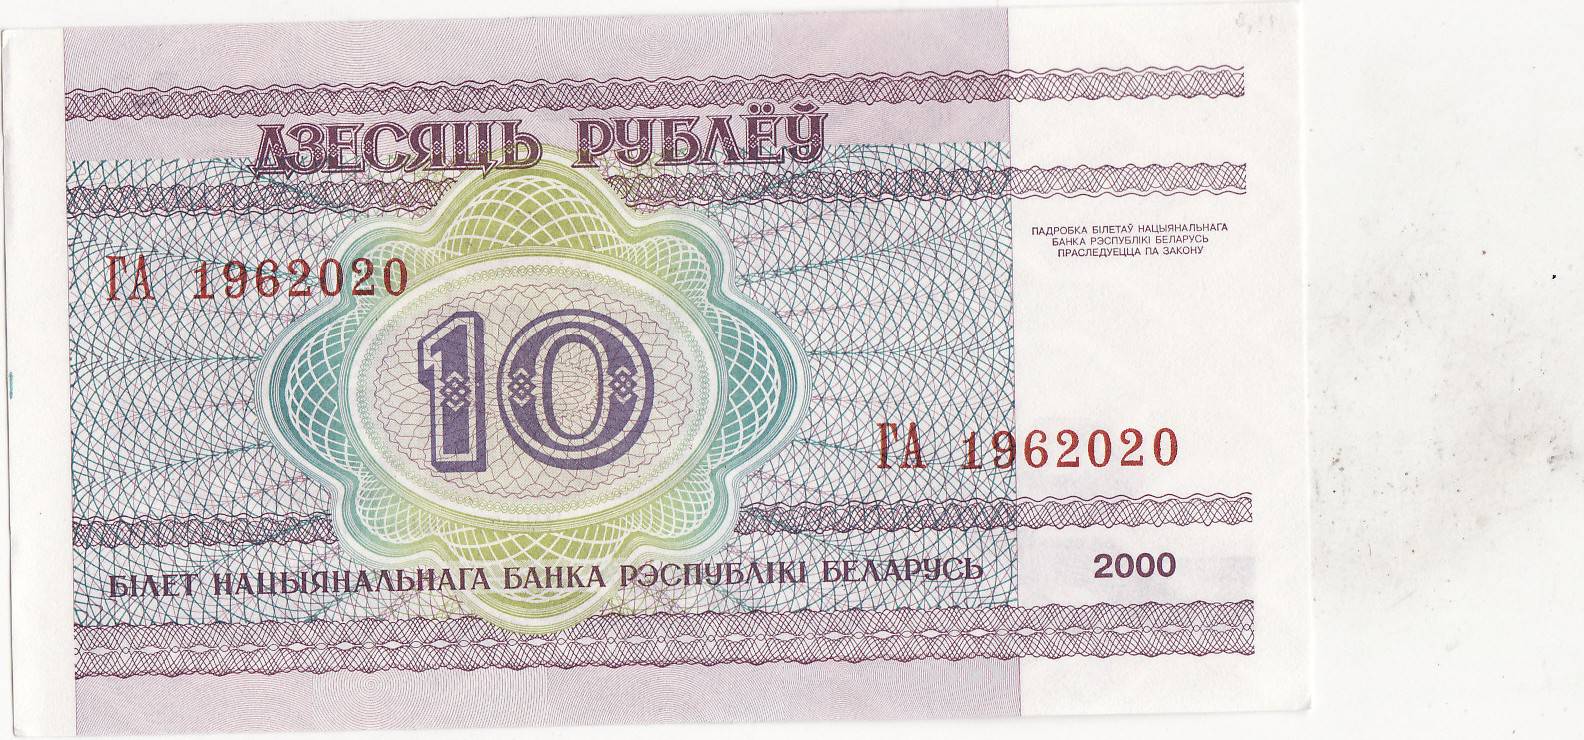 329 белорусских рублей. Бона Беларусь Белоруссия 10 рублей 2000. 10 Рублей 2000 Беларусь.